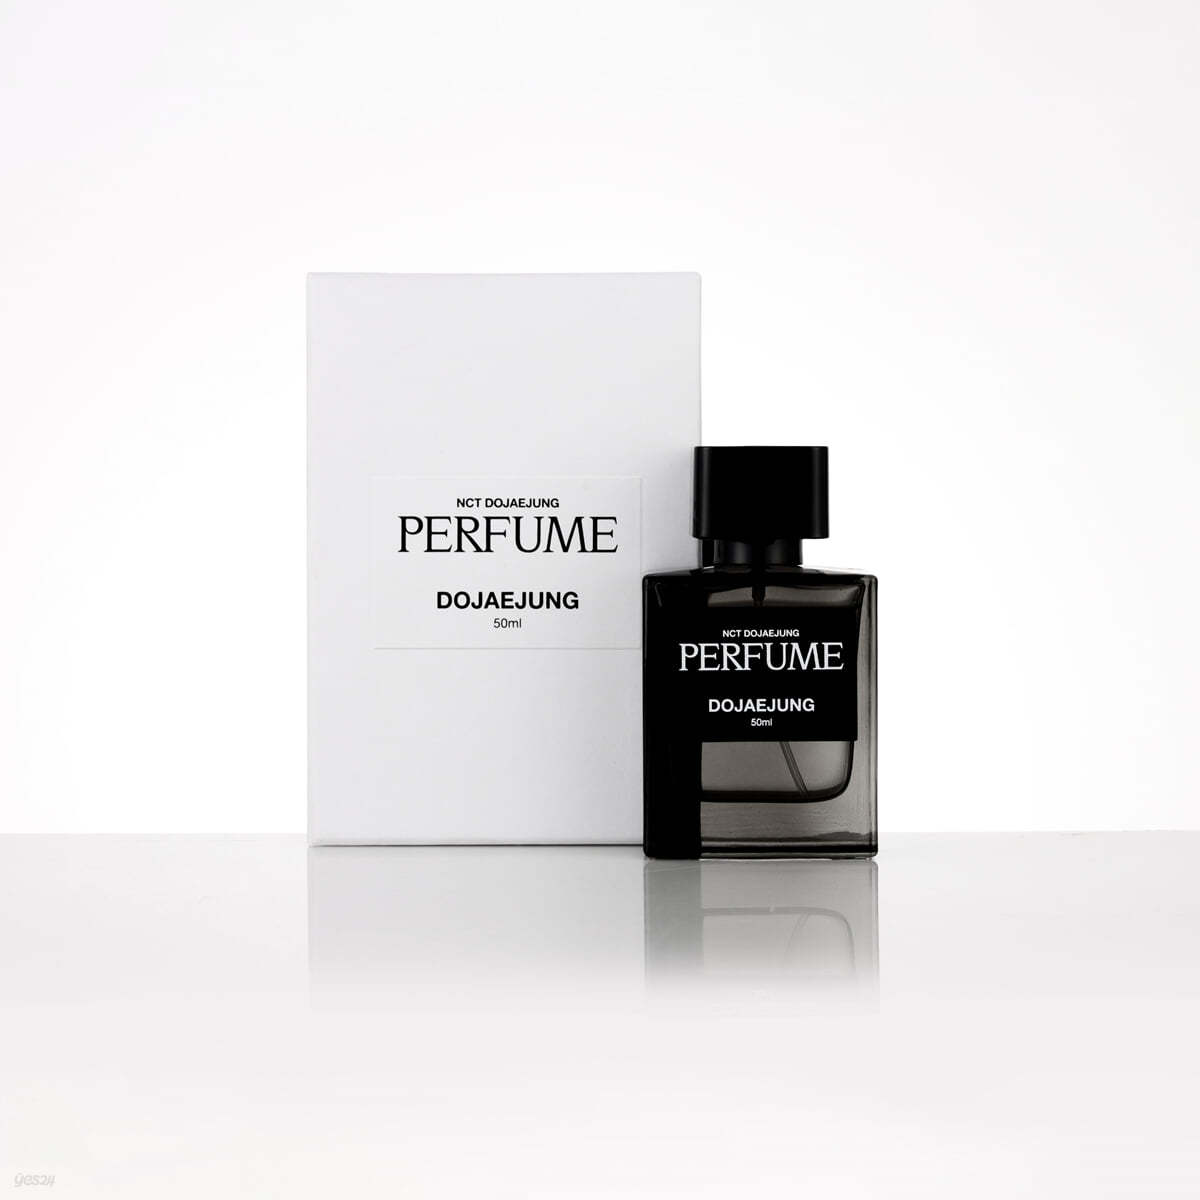 [NCT DOJAEJUNG 'Perfume'] DOJAEJUNG EAU DE PERFUME